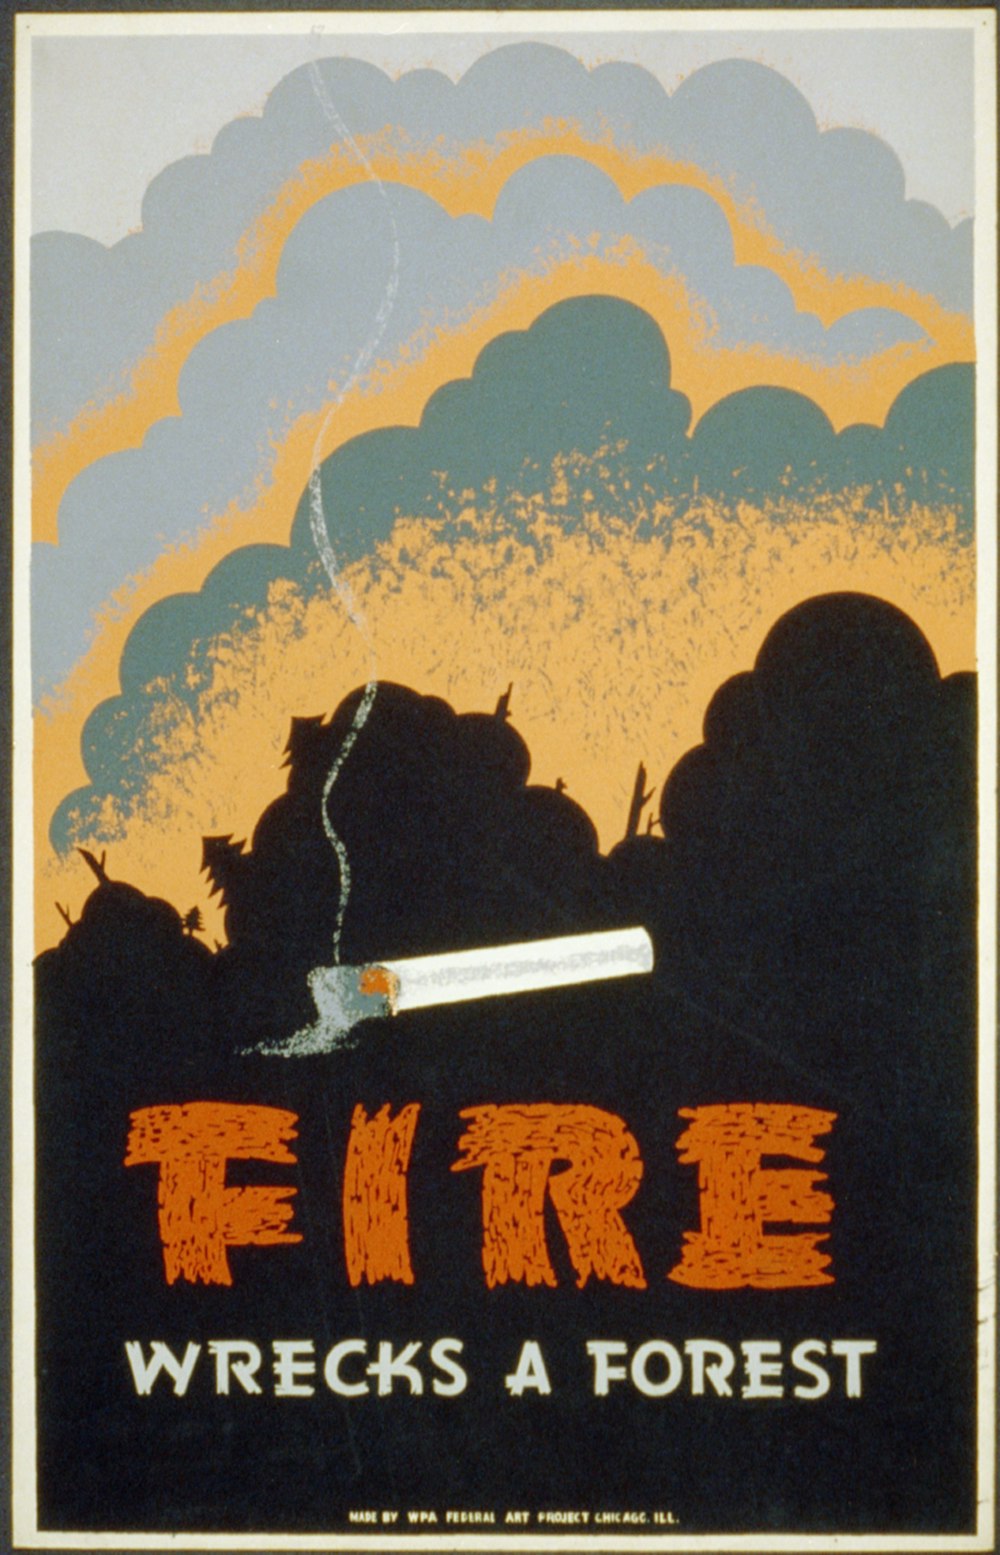 Affiche pour la prévention des incendies de forêt montrant une cigarette allumée et un feu de forêt. 